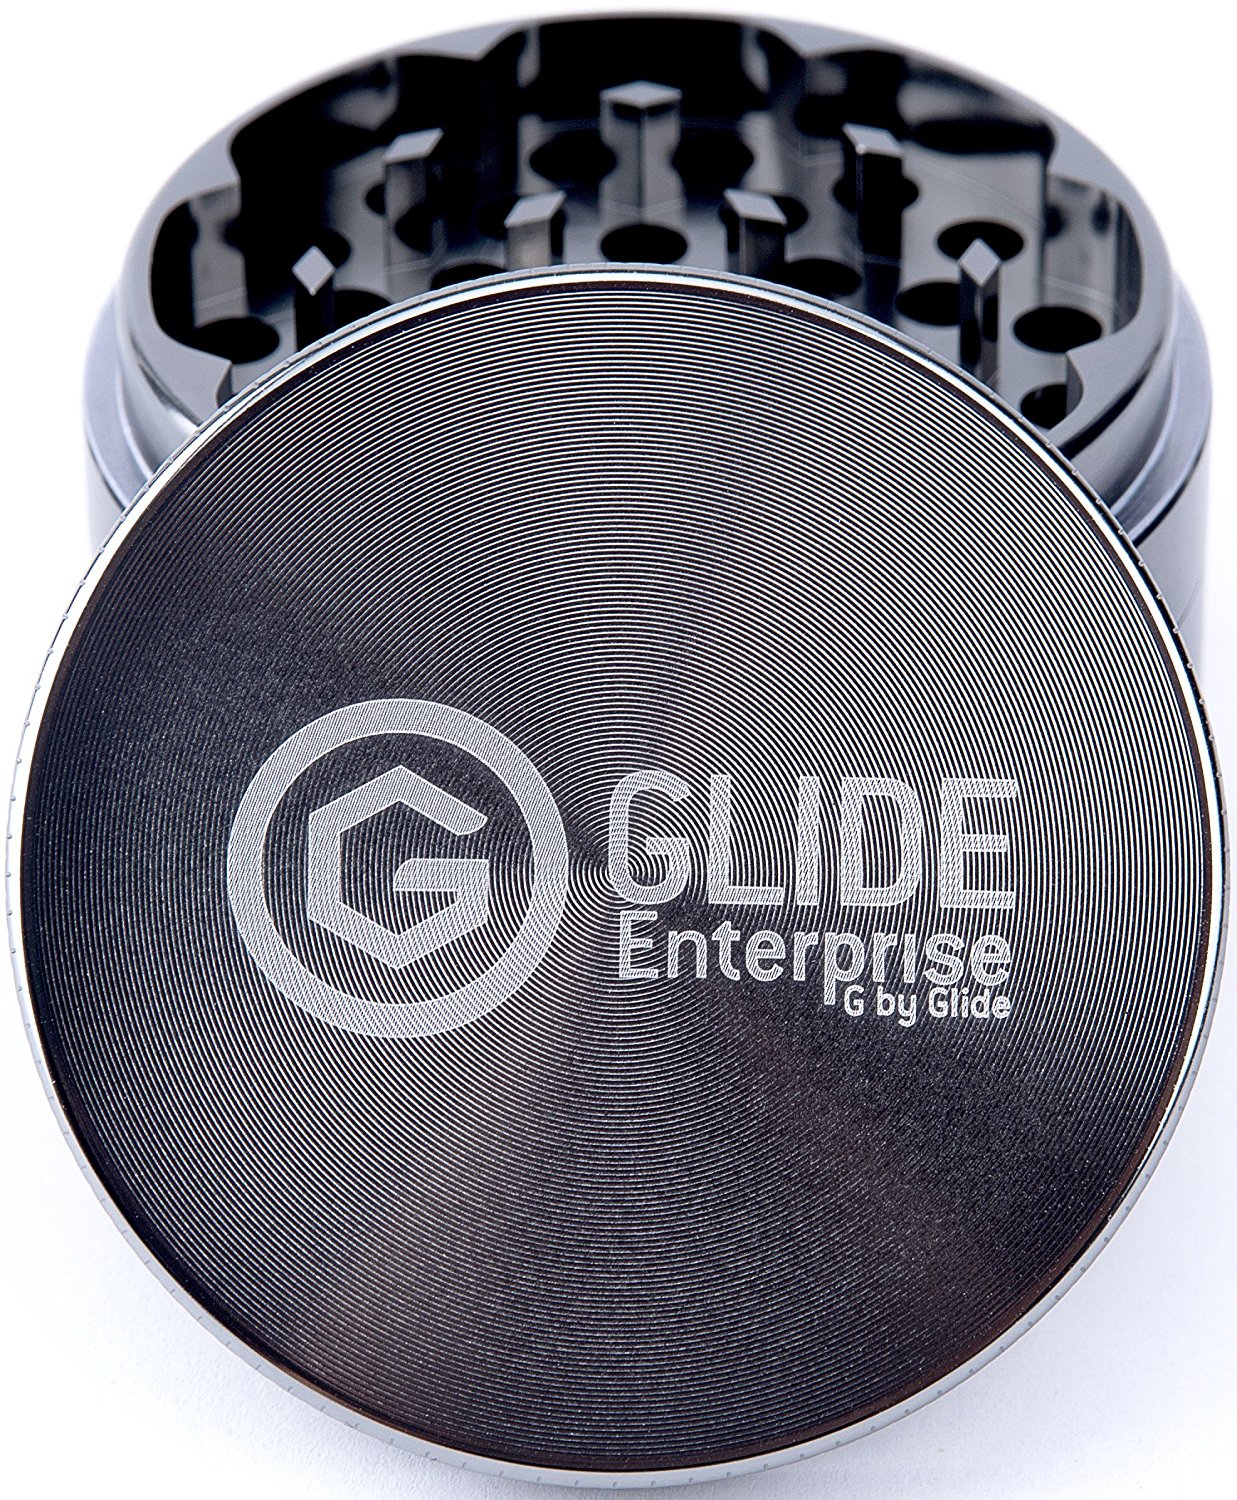 G By Glide Weed Grinder